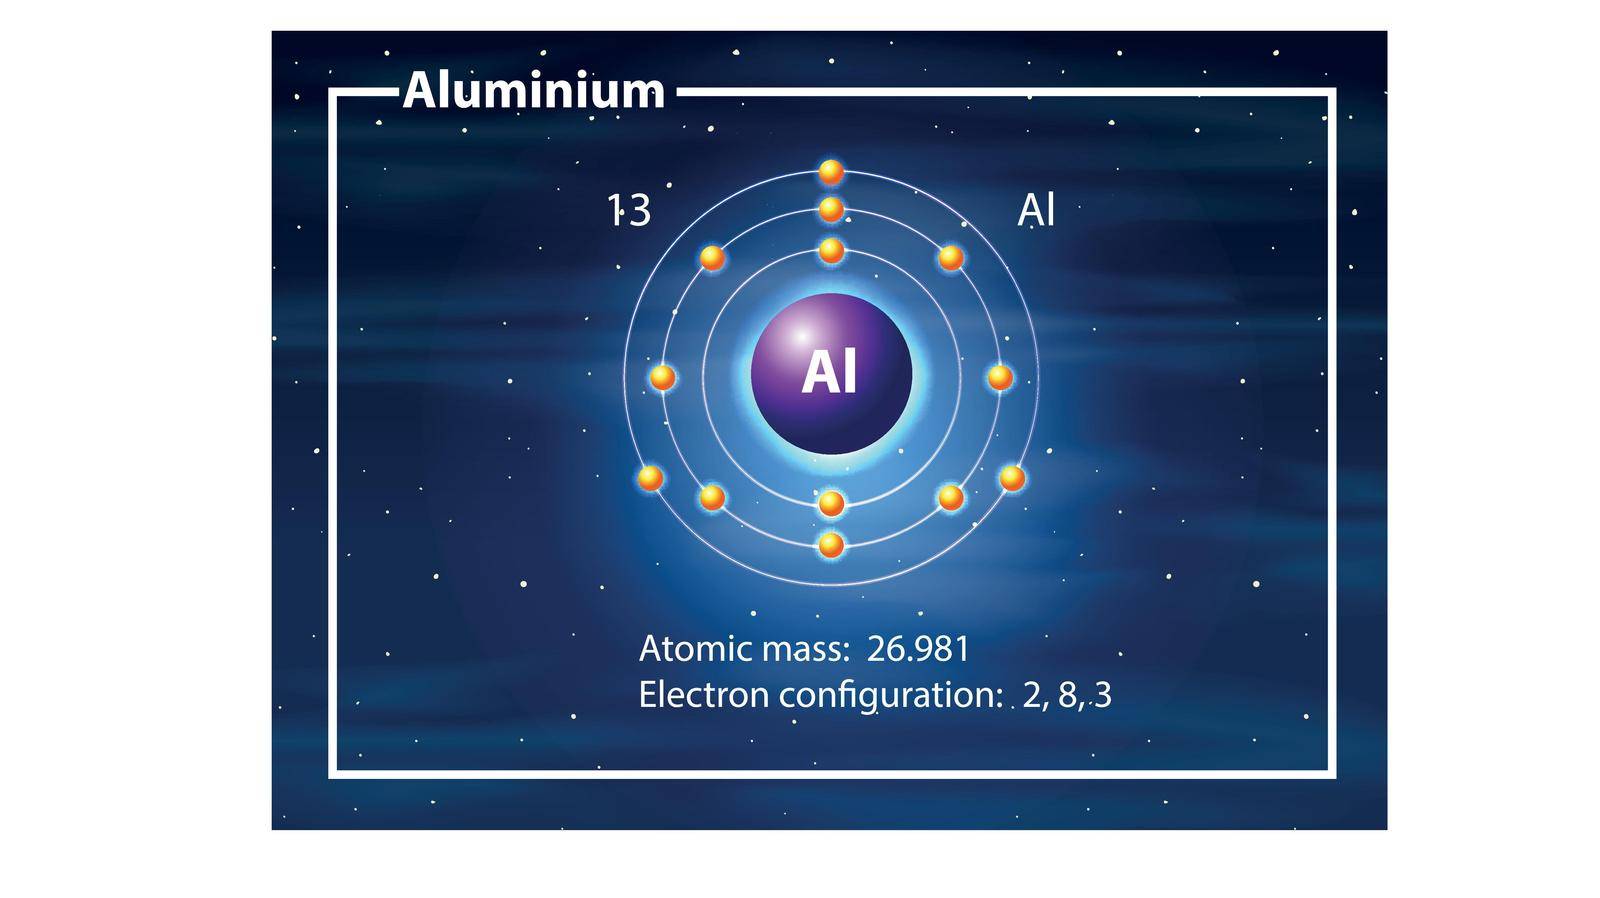 A Aluminium atom diagram by iimages